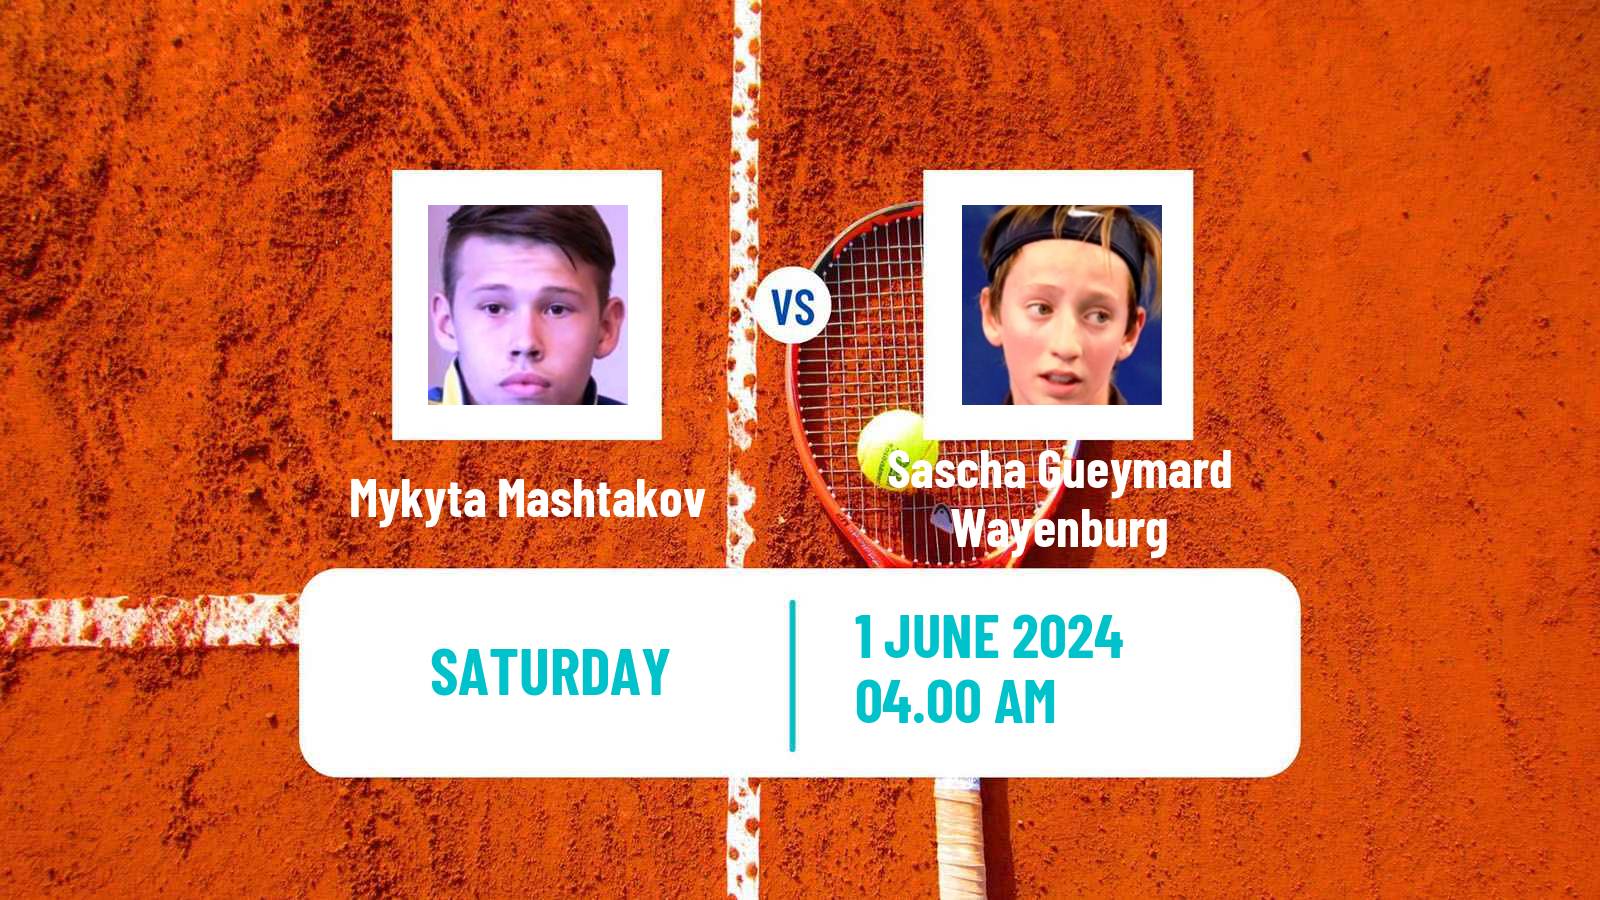 Tennis ITF M15 Bol 2 Men Mykyta Mashtakov - Sascha Gueymard Wayenburg